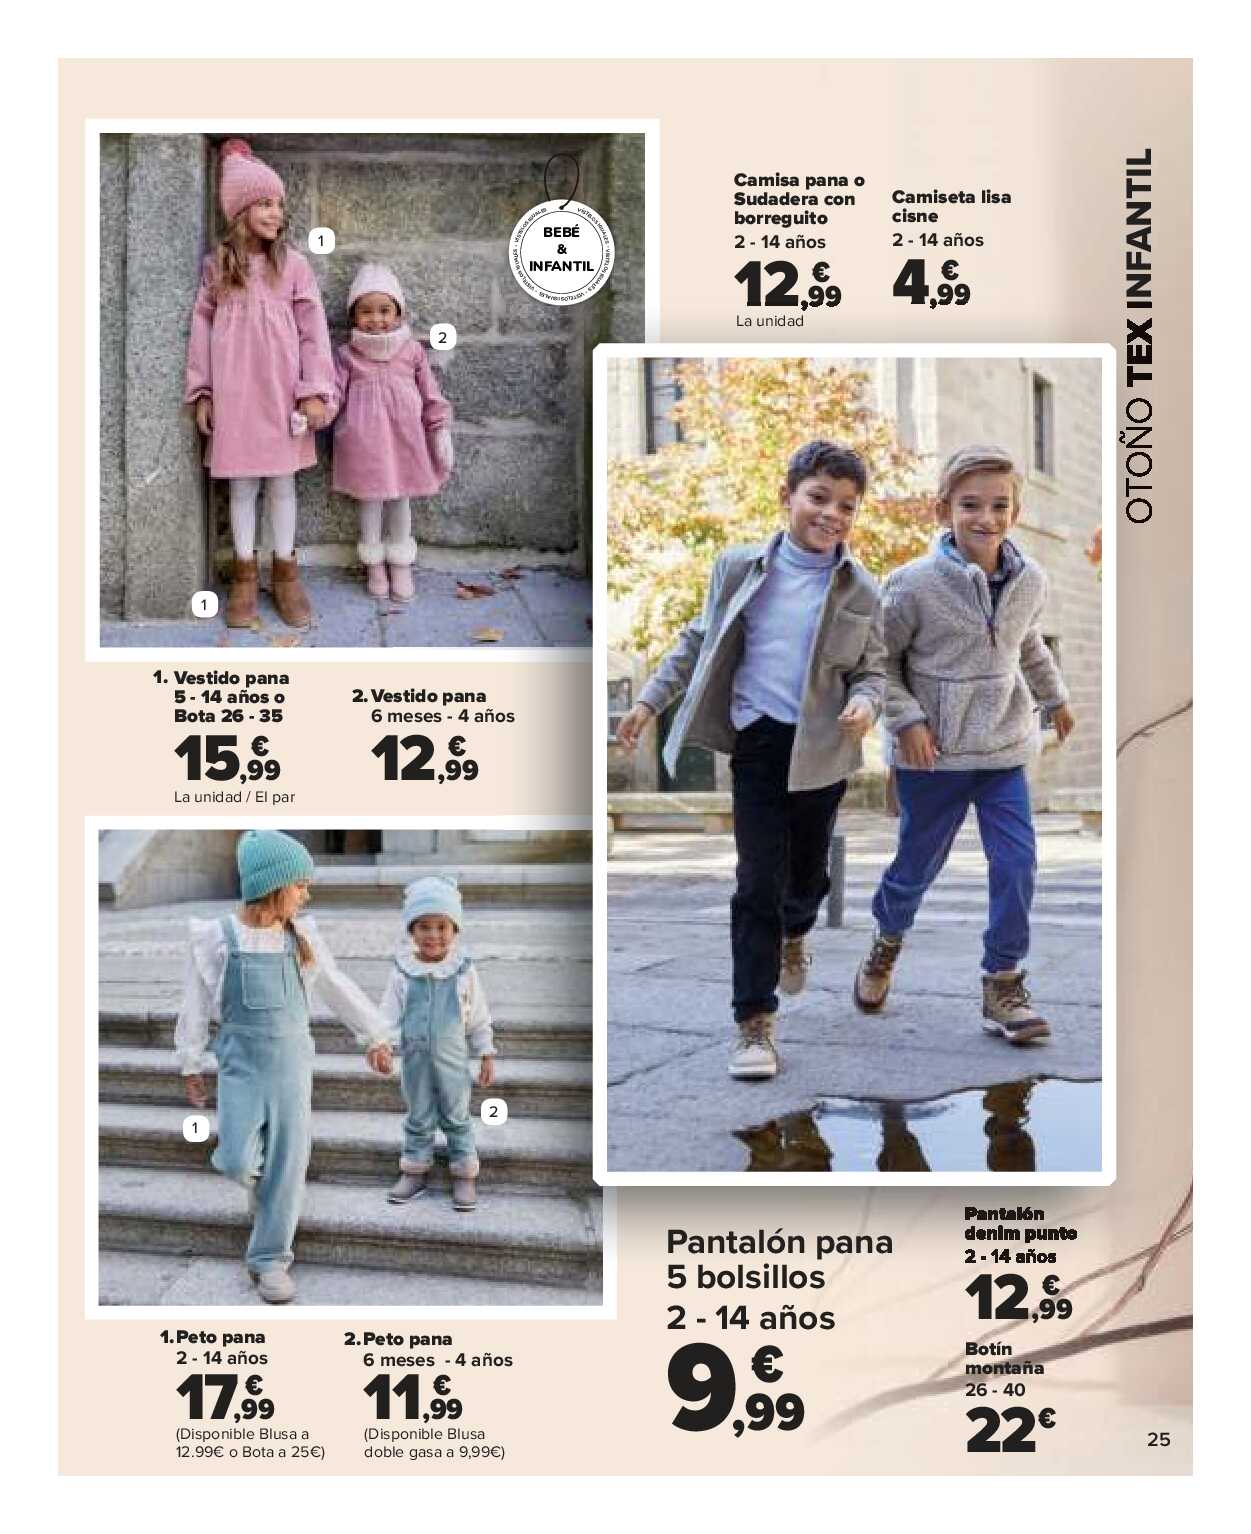 Textil mujer, hombre y niños Carrefour. Página 25